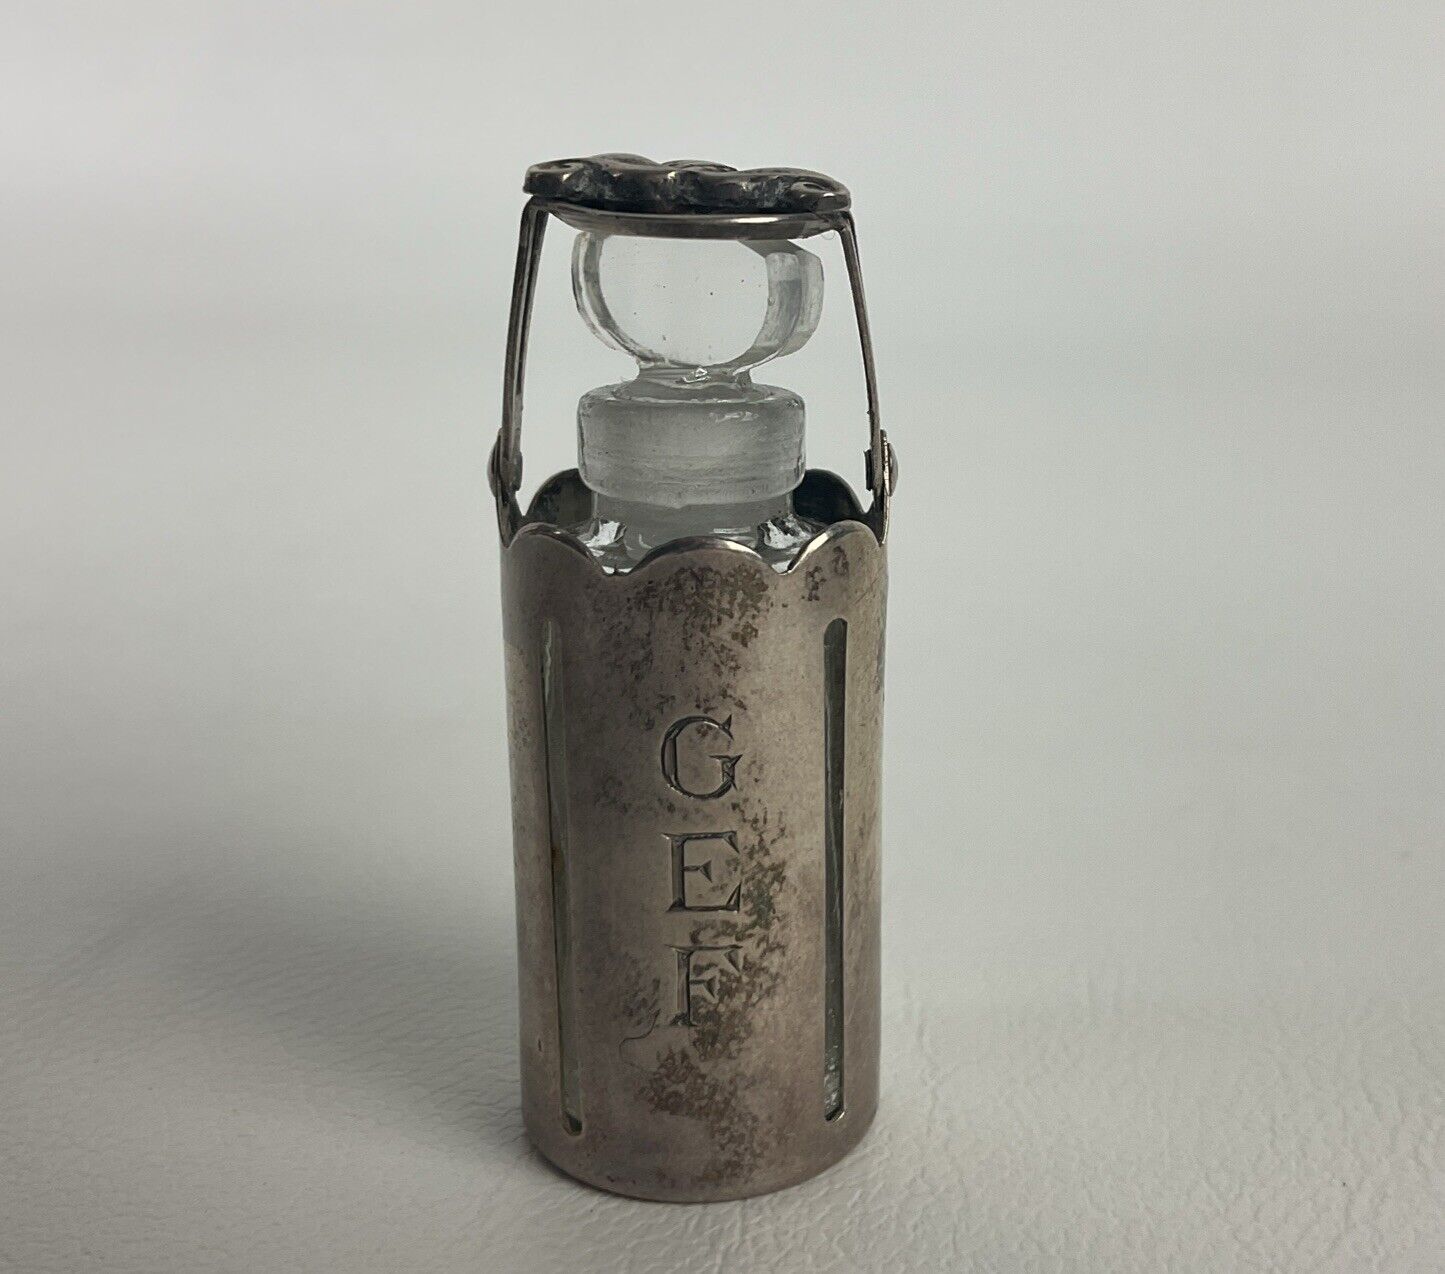 Rare Georg Jensen Sterling Silver Perfume Bottle Holder With Glass Bottle Insert